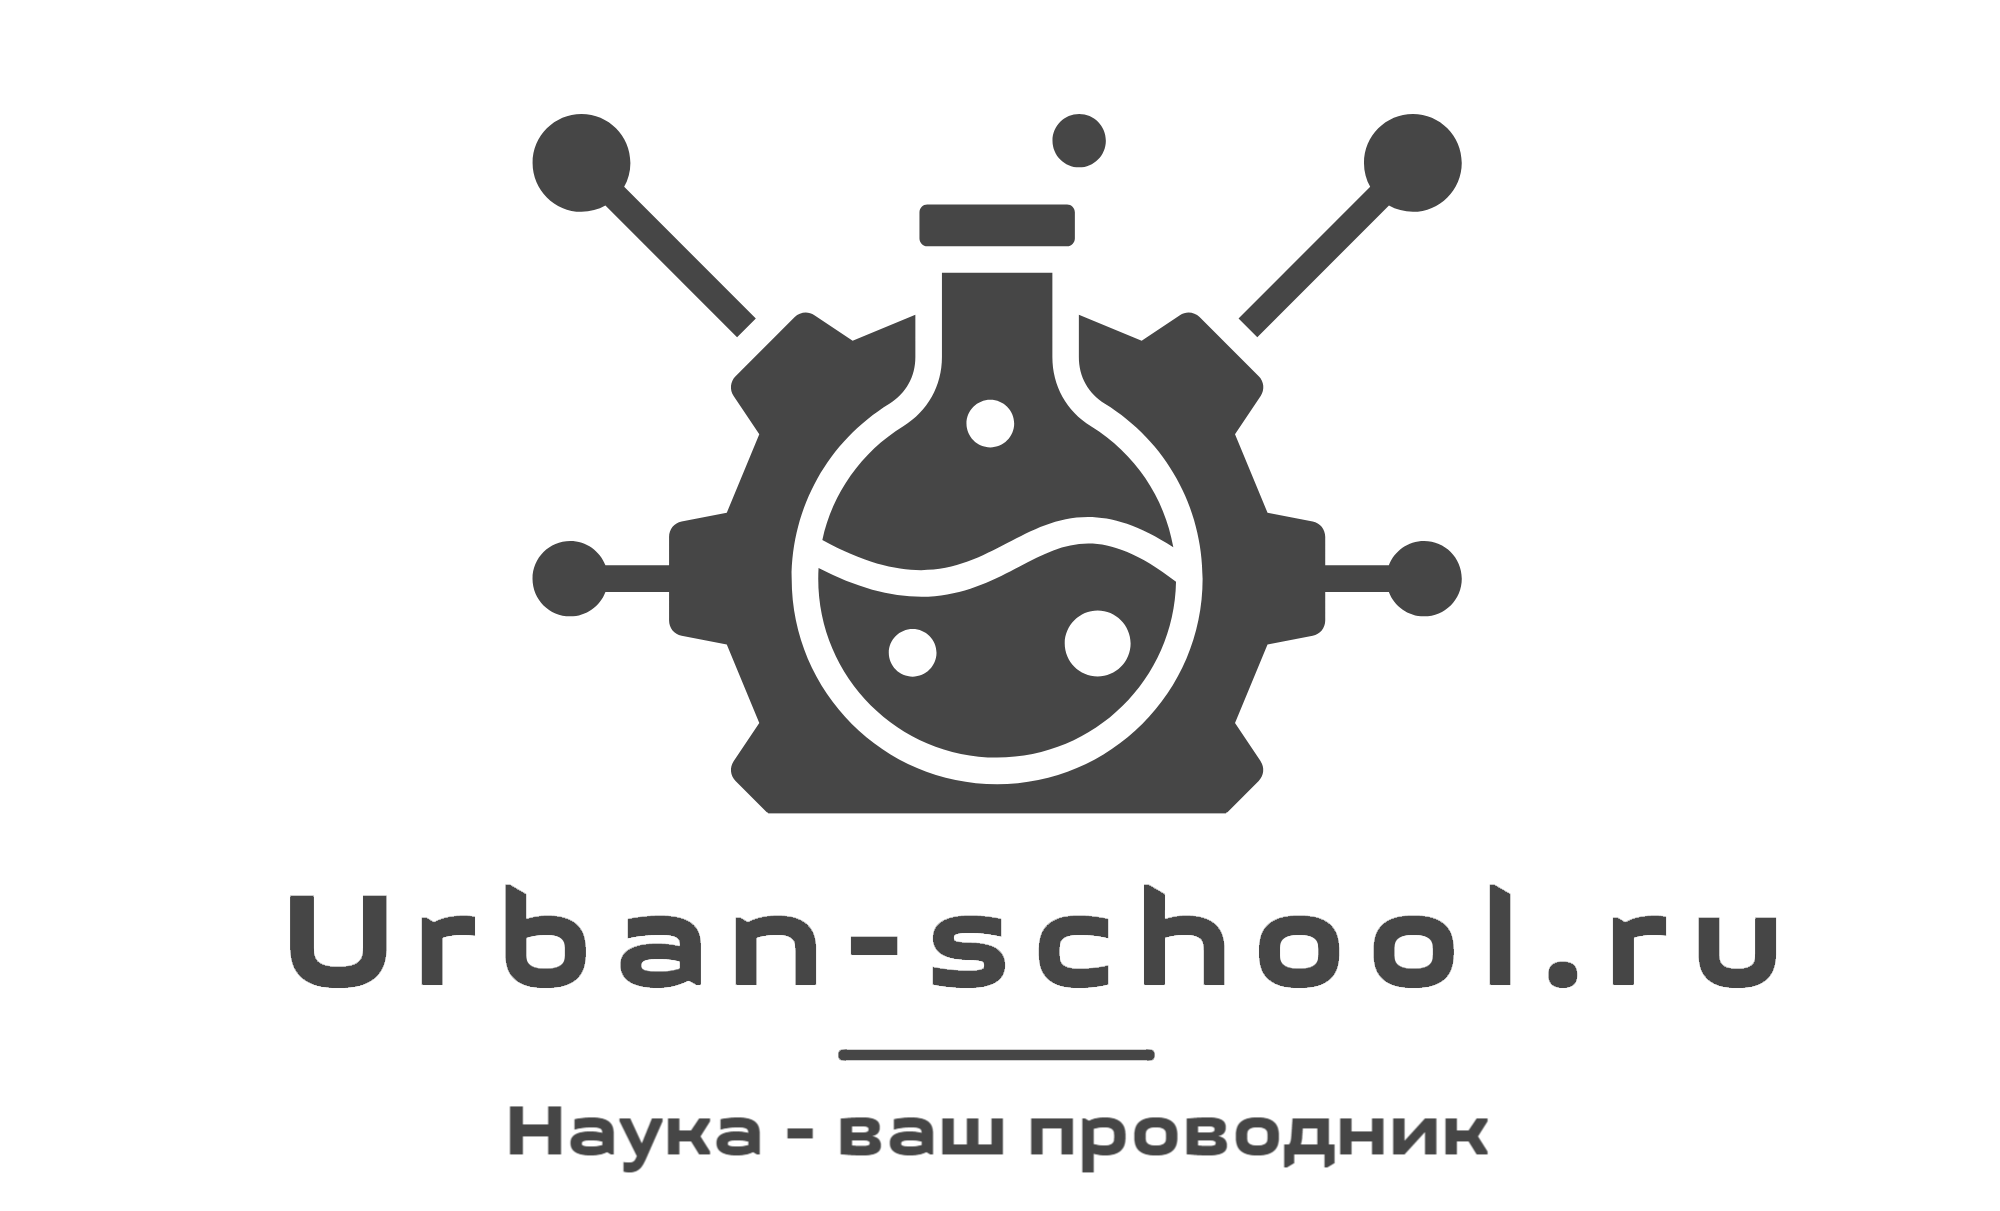 Urban-school.ru